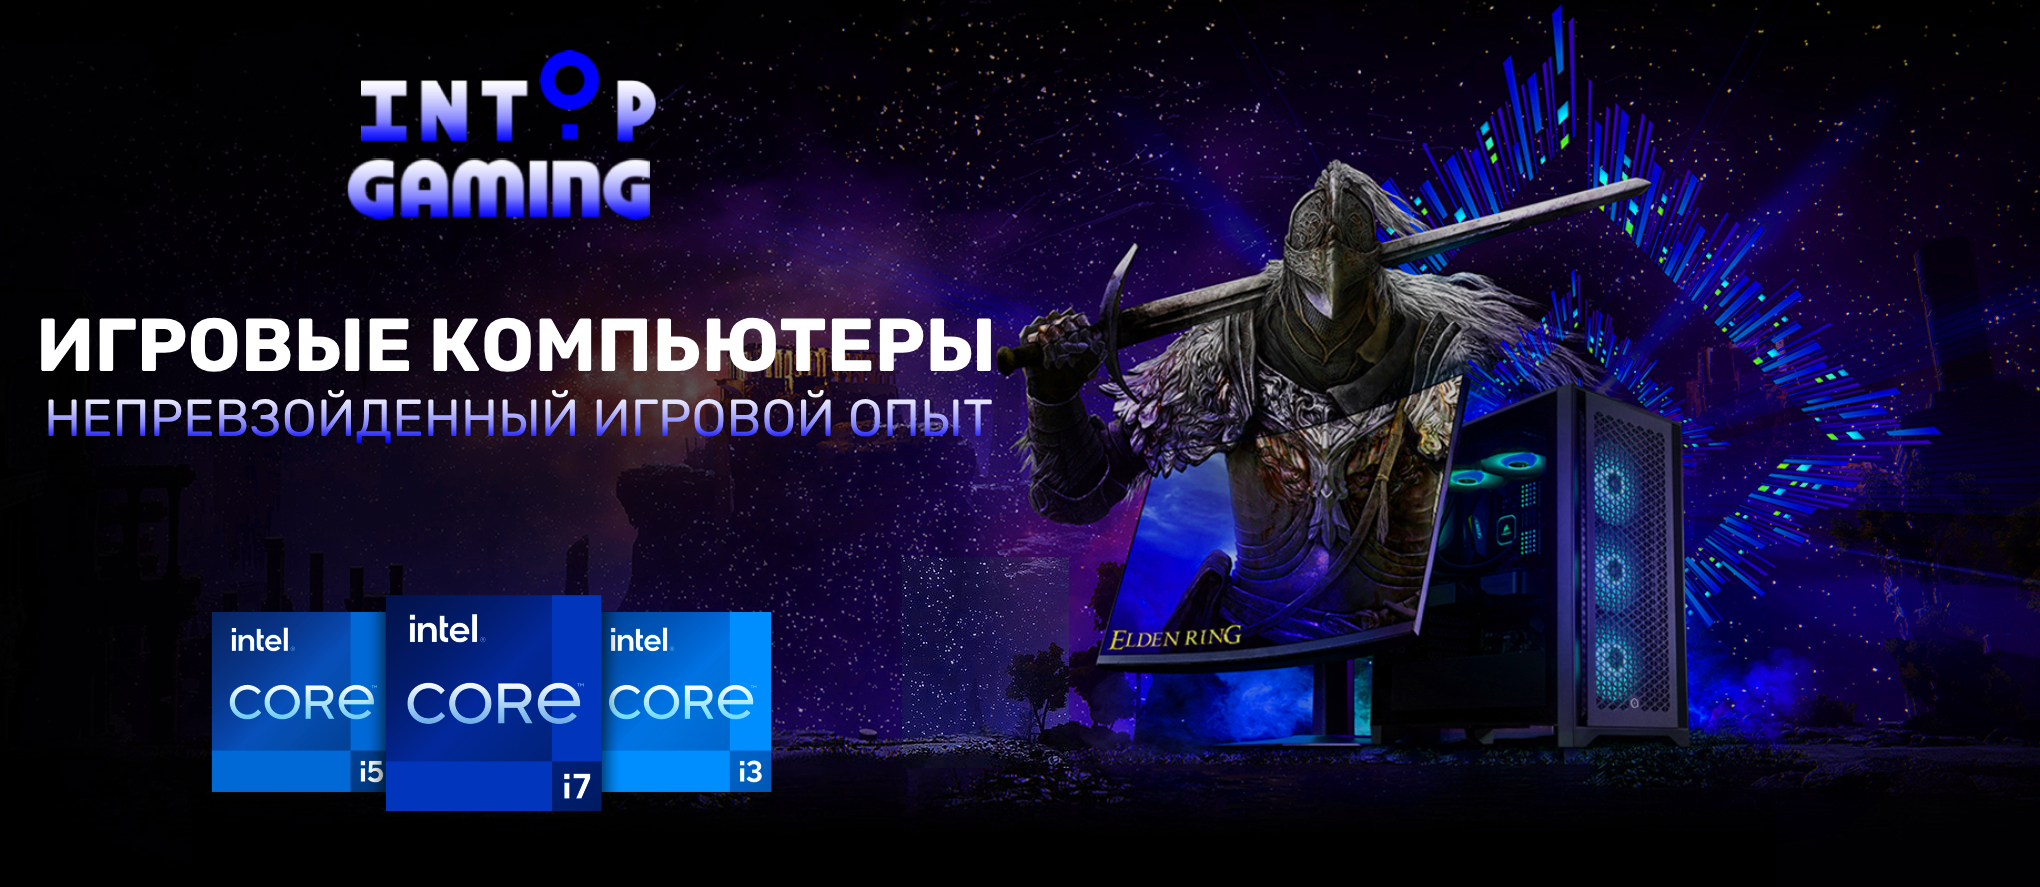 Intop Gaming